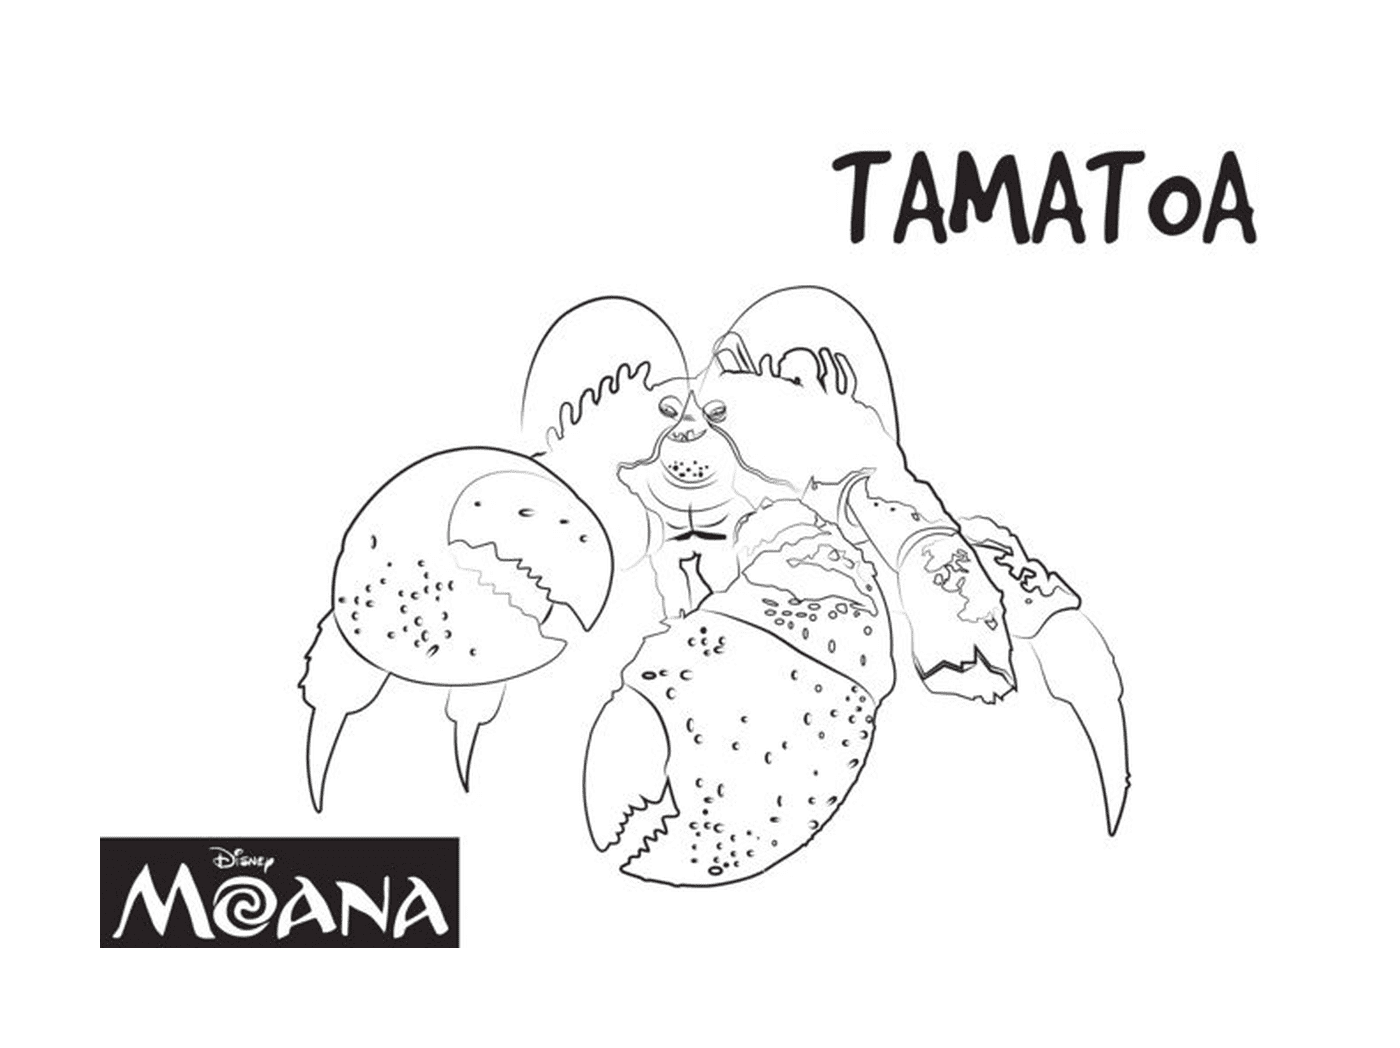  Tamatoa, exotische Kreatur von Moana 